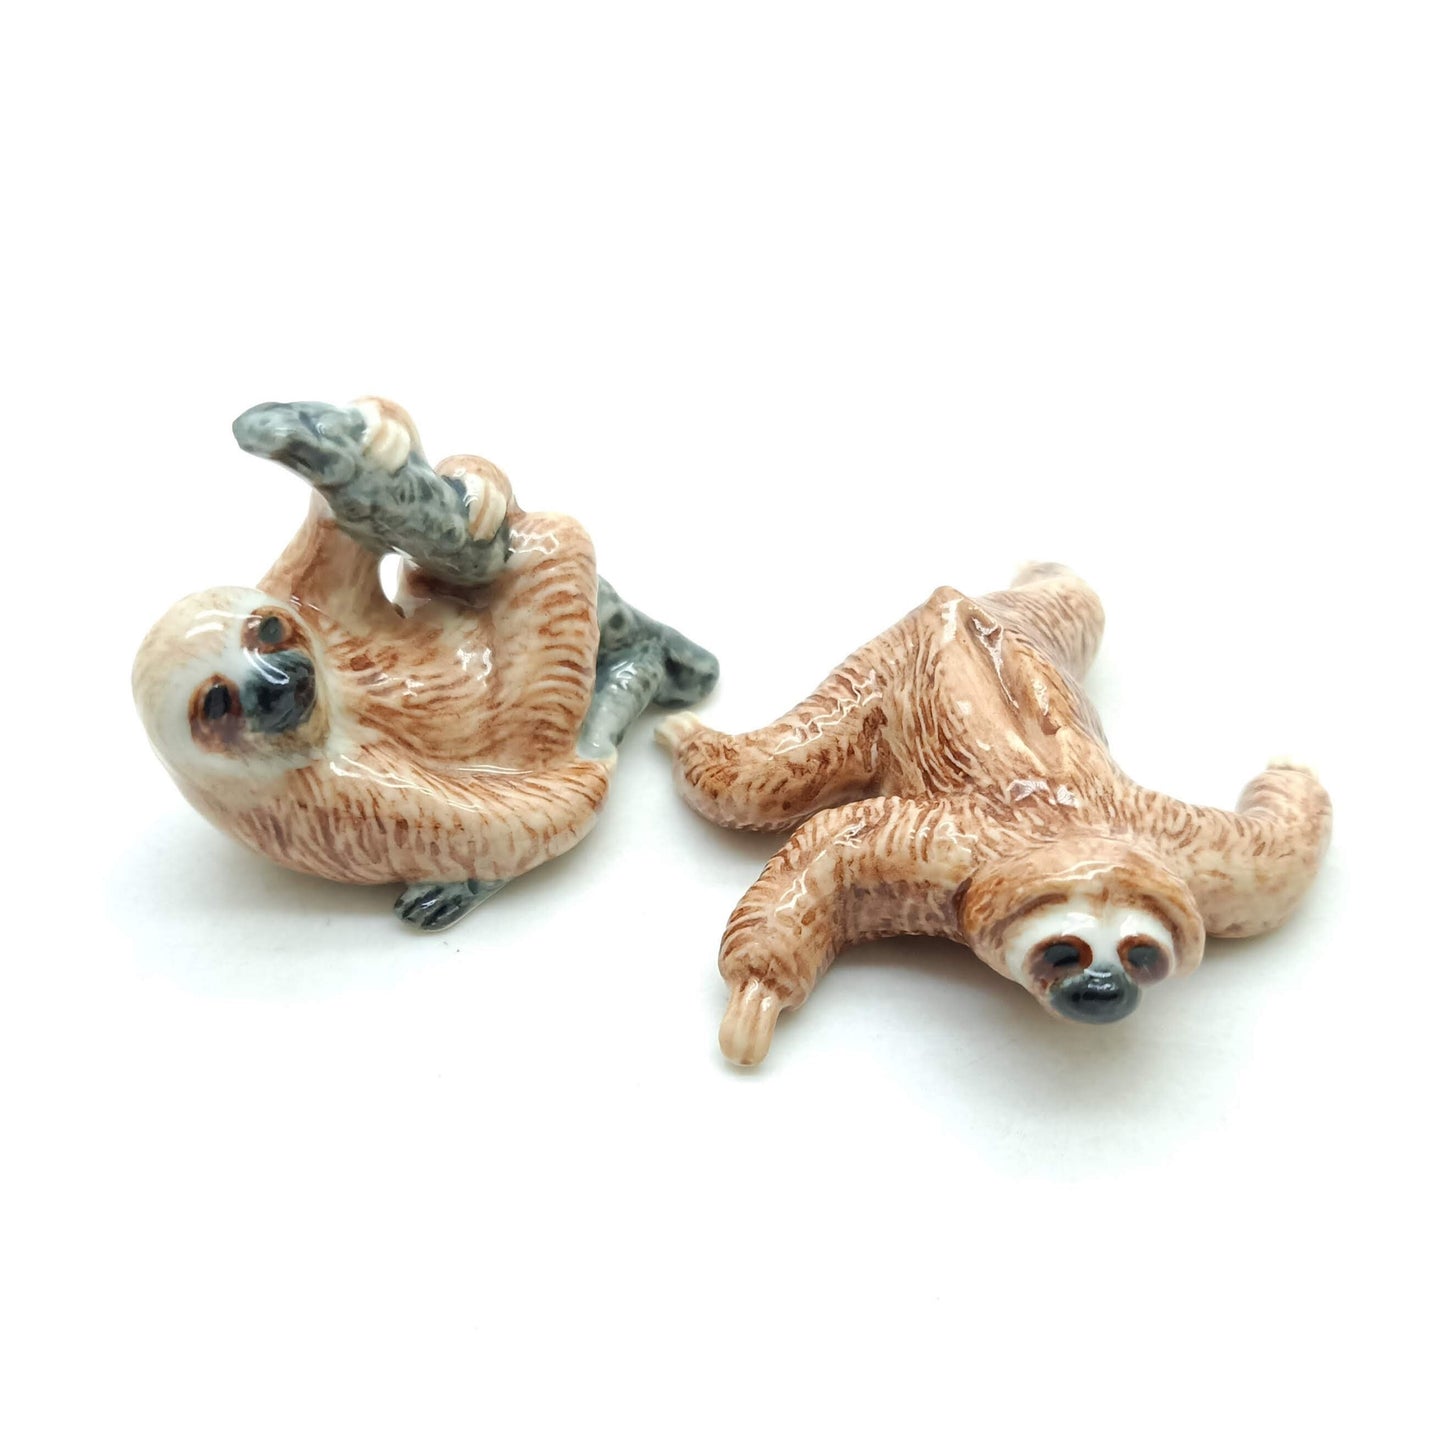 2 Sloth Figurines